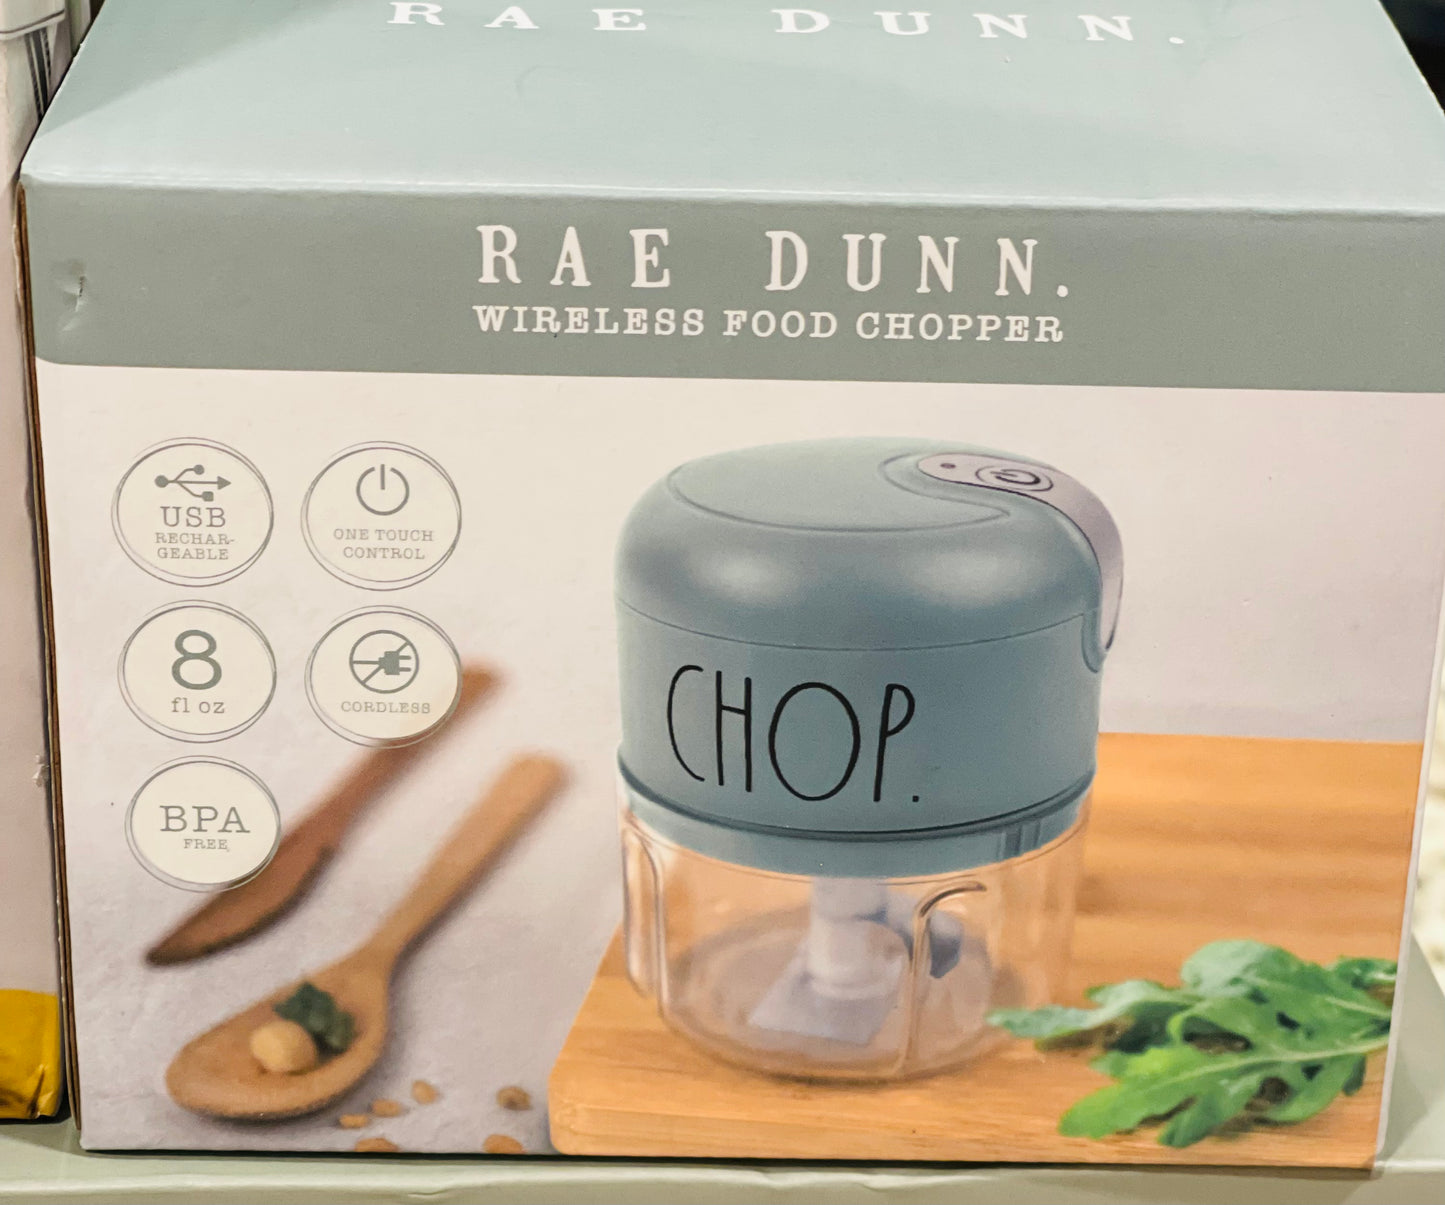 Rae Dunn Wireless Food Chopper